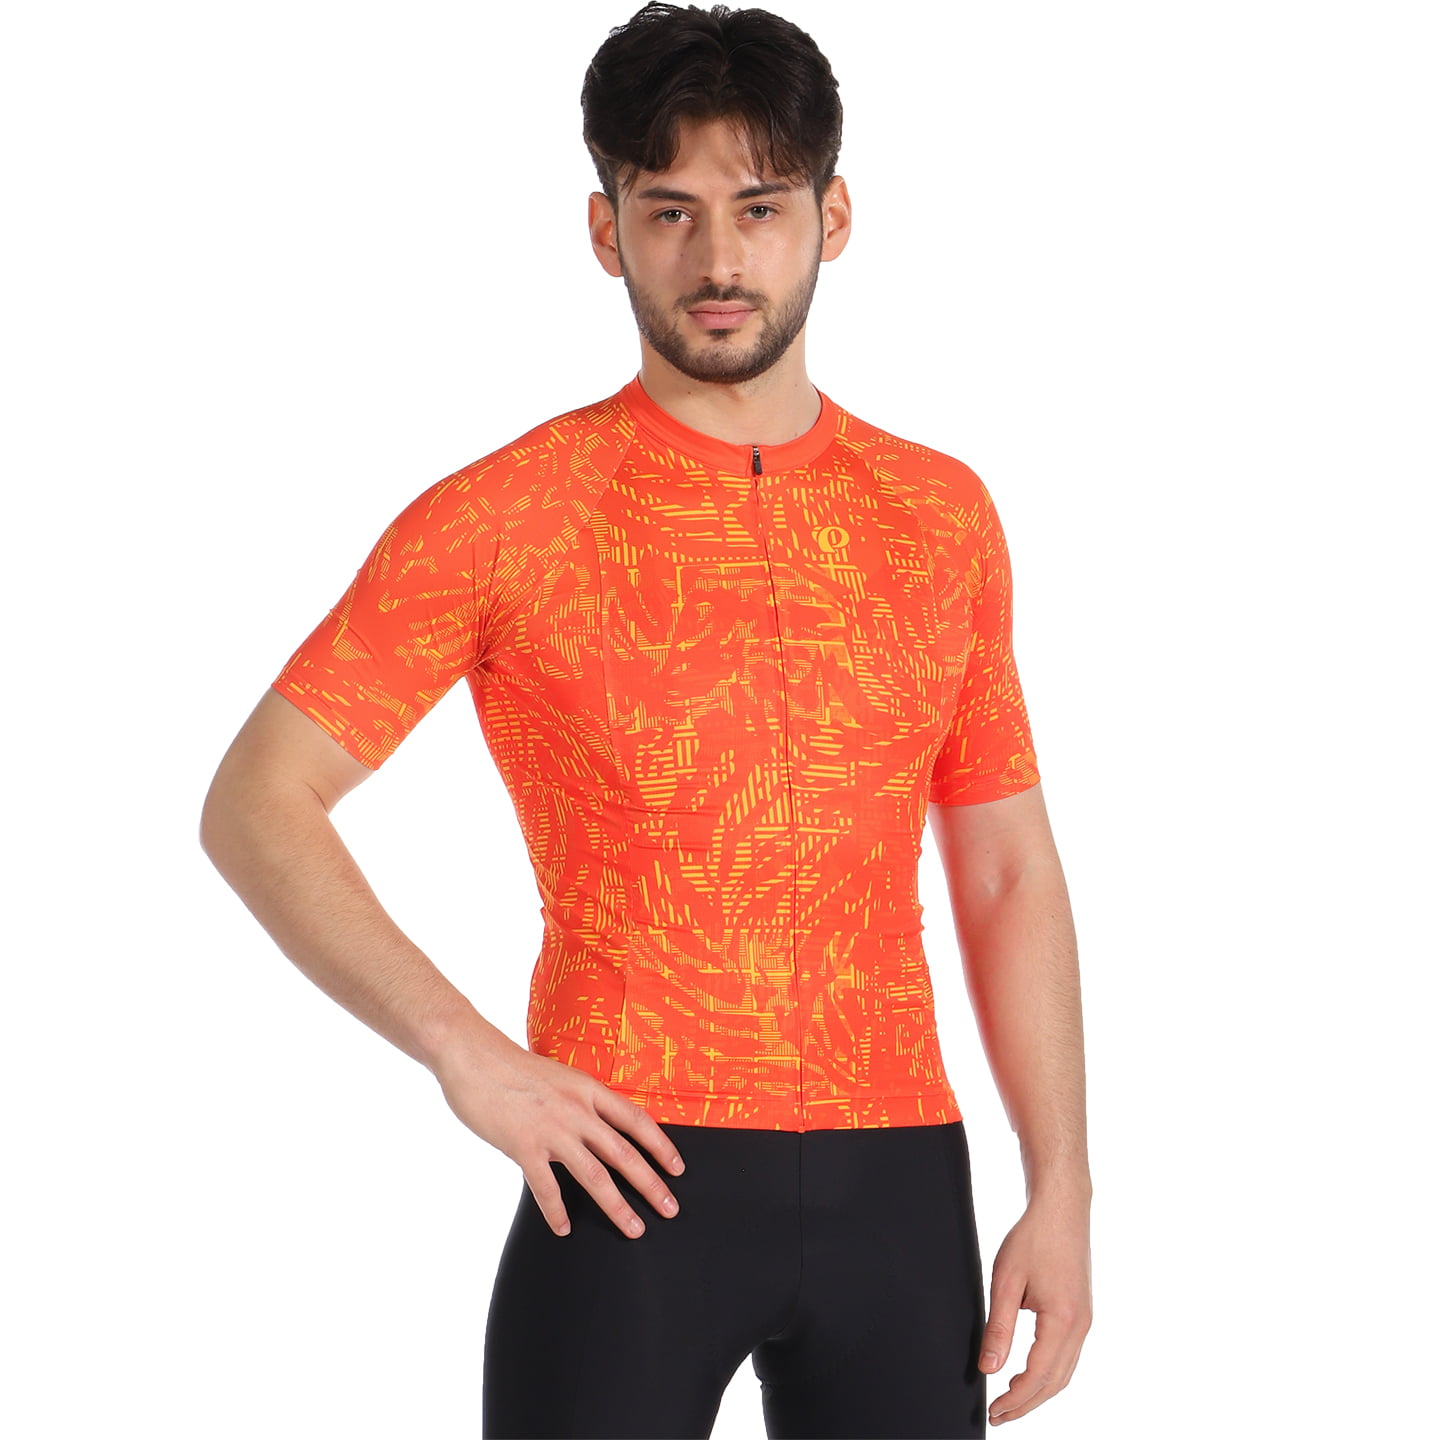 PEARL IZUMI Interval Short Sleeve Jersey Short Sleeve Jersey, for men, size 2XL, Cycling jersey, Cycle clothing